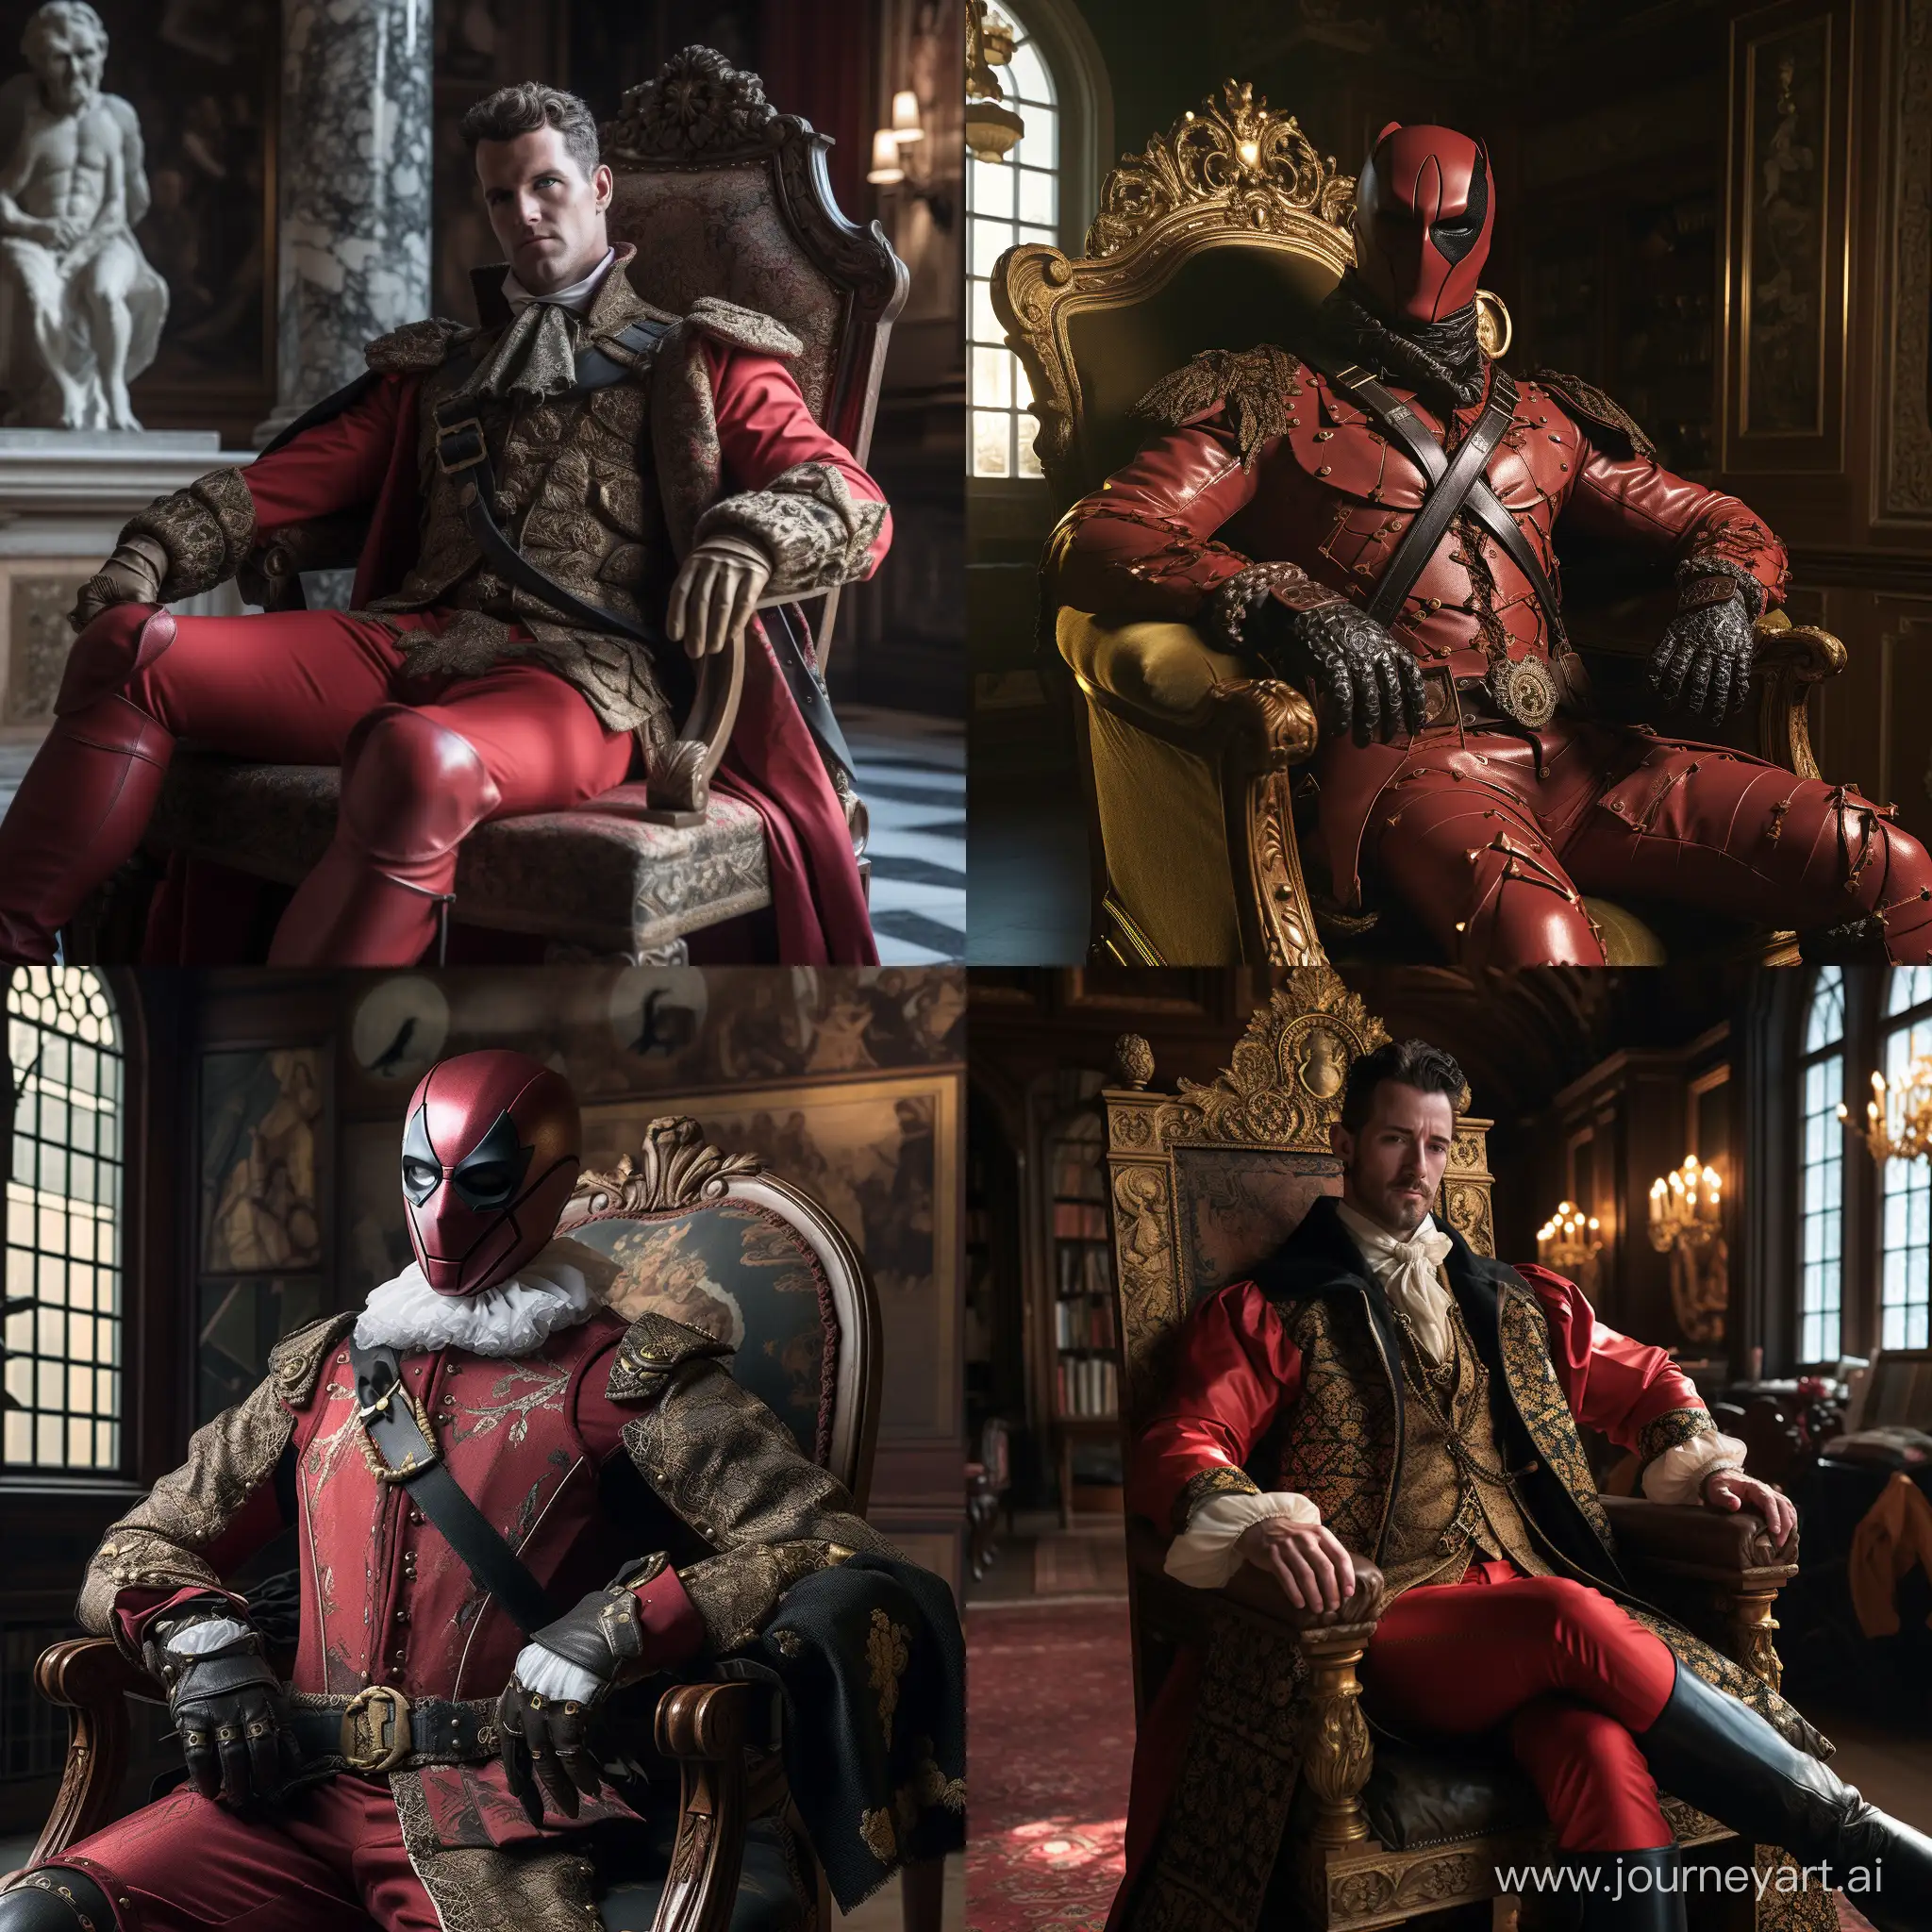 still of Deadpool wearing a Deadpool suit
from Renaissance era [Deadpool (80s)]
Renaissance era, film still from
Renaissance era